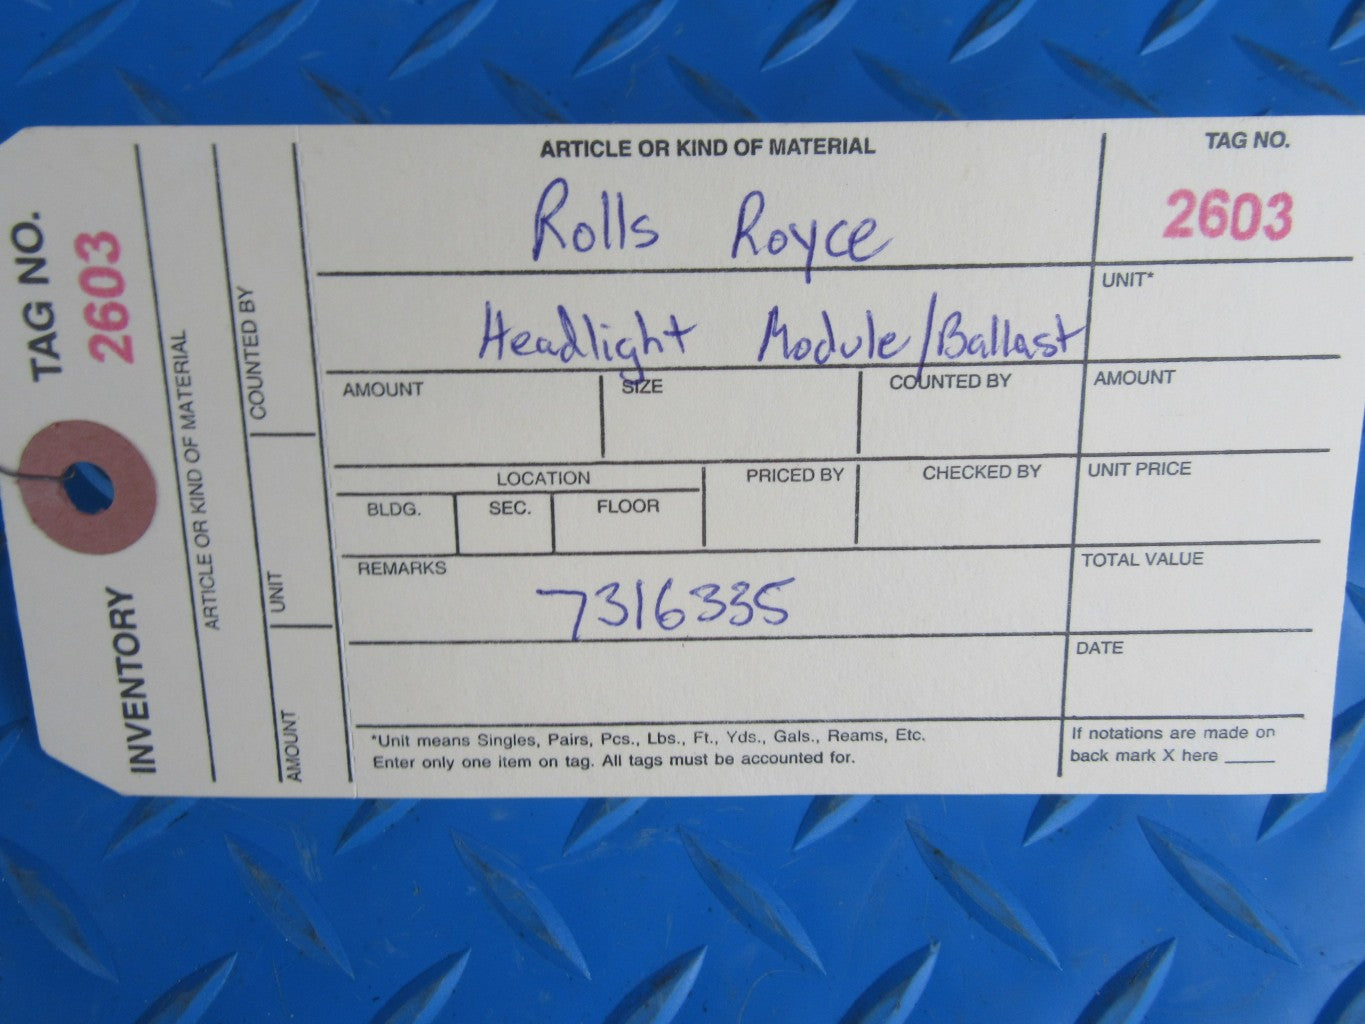 Rolls Royce Ghost headlight module ballast #2603